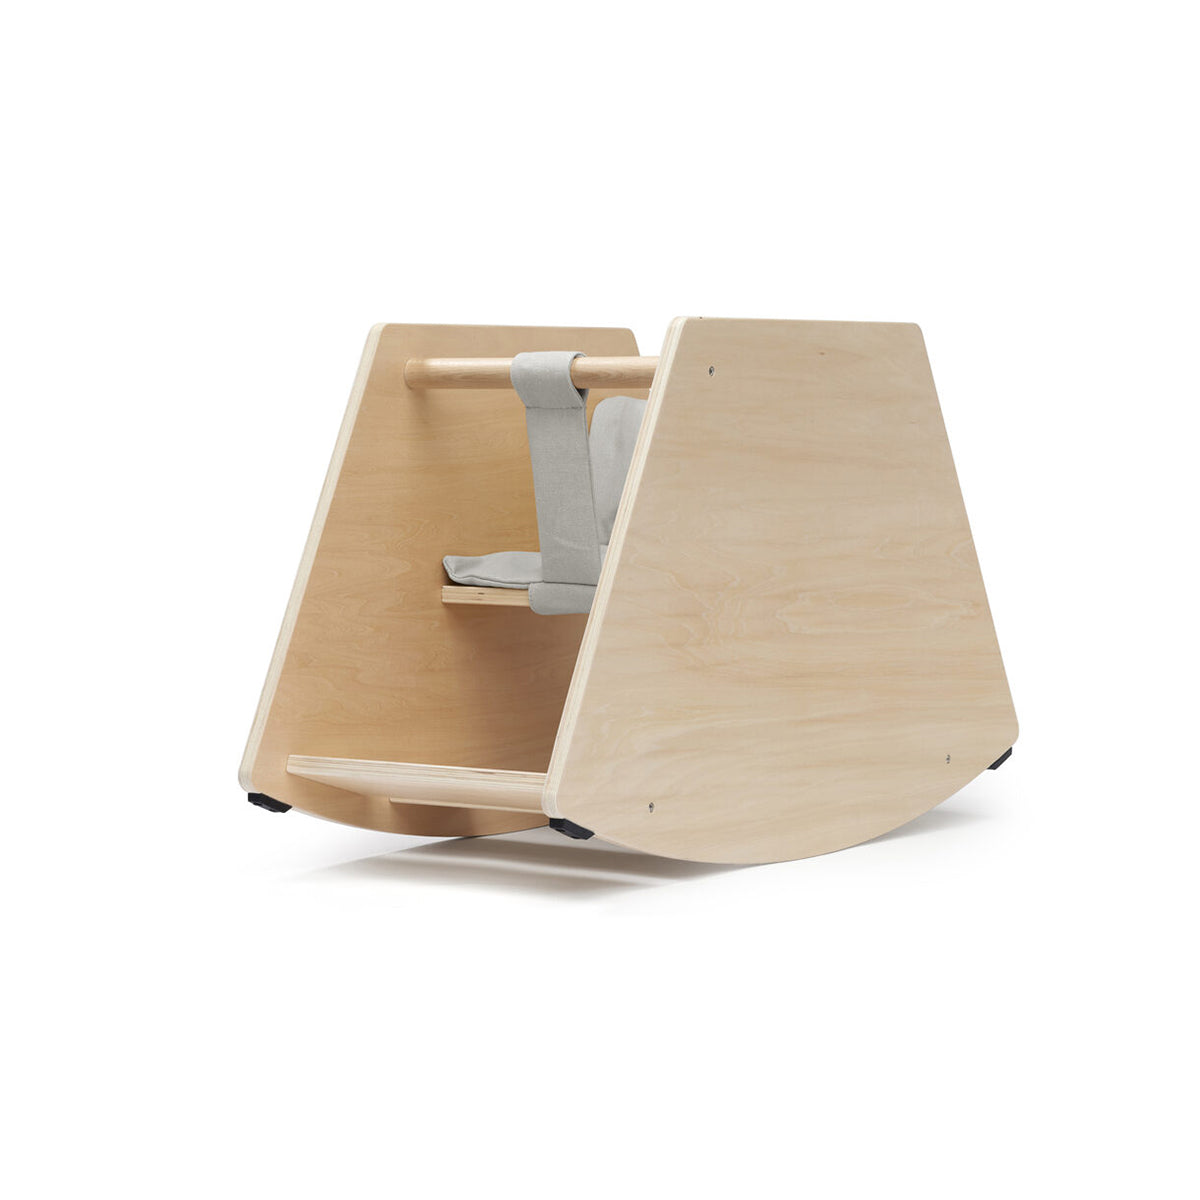 De Kid’s Concept houten schommelstoel is de moderne versie van een hobbelpaard. Deze moderne versie is niet alleen leuk maar ook erg mooi en zal dankzij het design perfect in de woonkamer staan. VanZus.